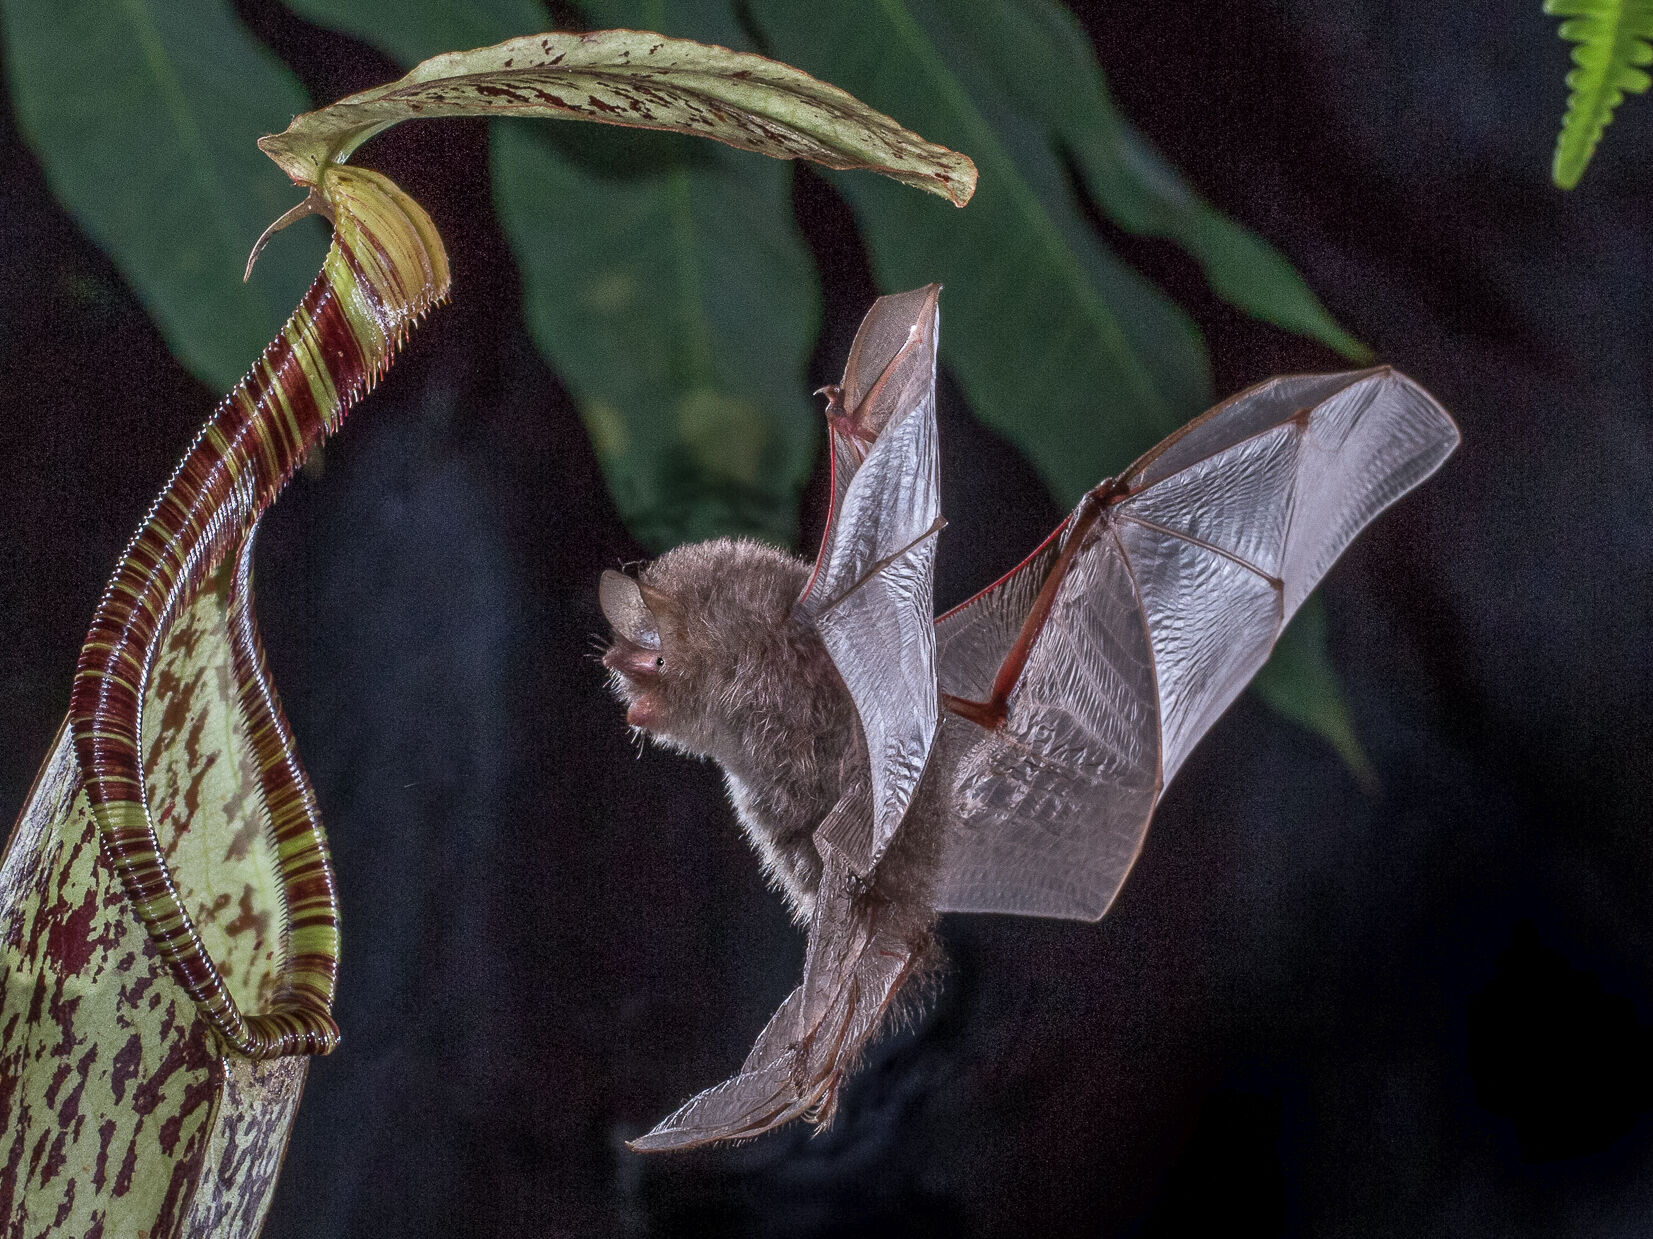 Das Bild zeigt die Kannenpflanze Nepenthes hemsleyana mit ihrem Mutualismuspartner, der Fledermaus Kerivoula hardwickii. Foto: Merlin D. Tuttle, www.merlintuttle.com